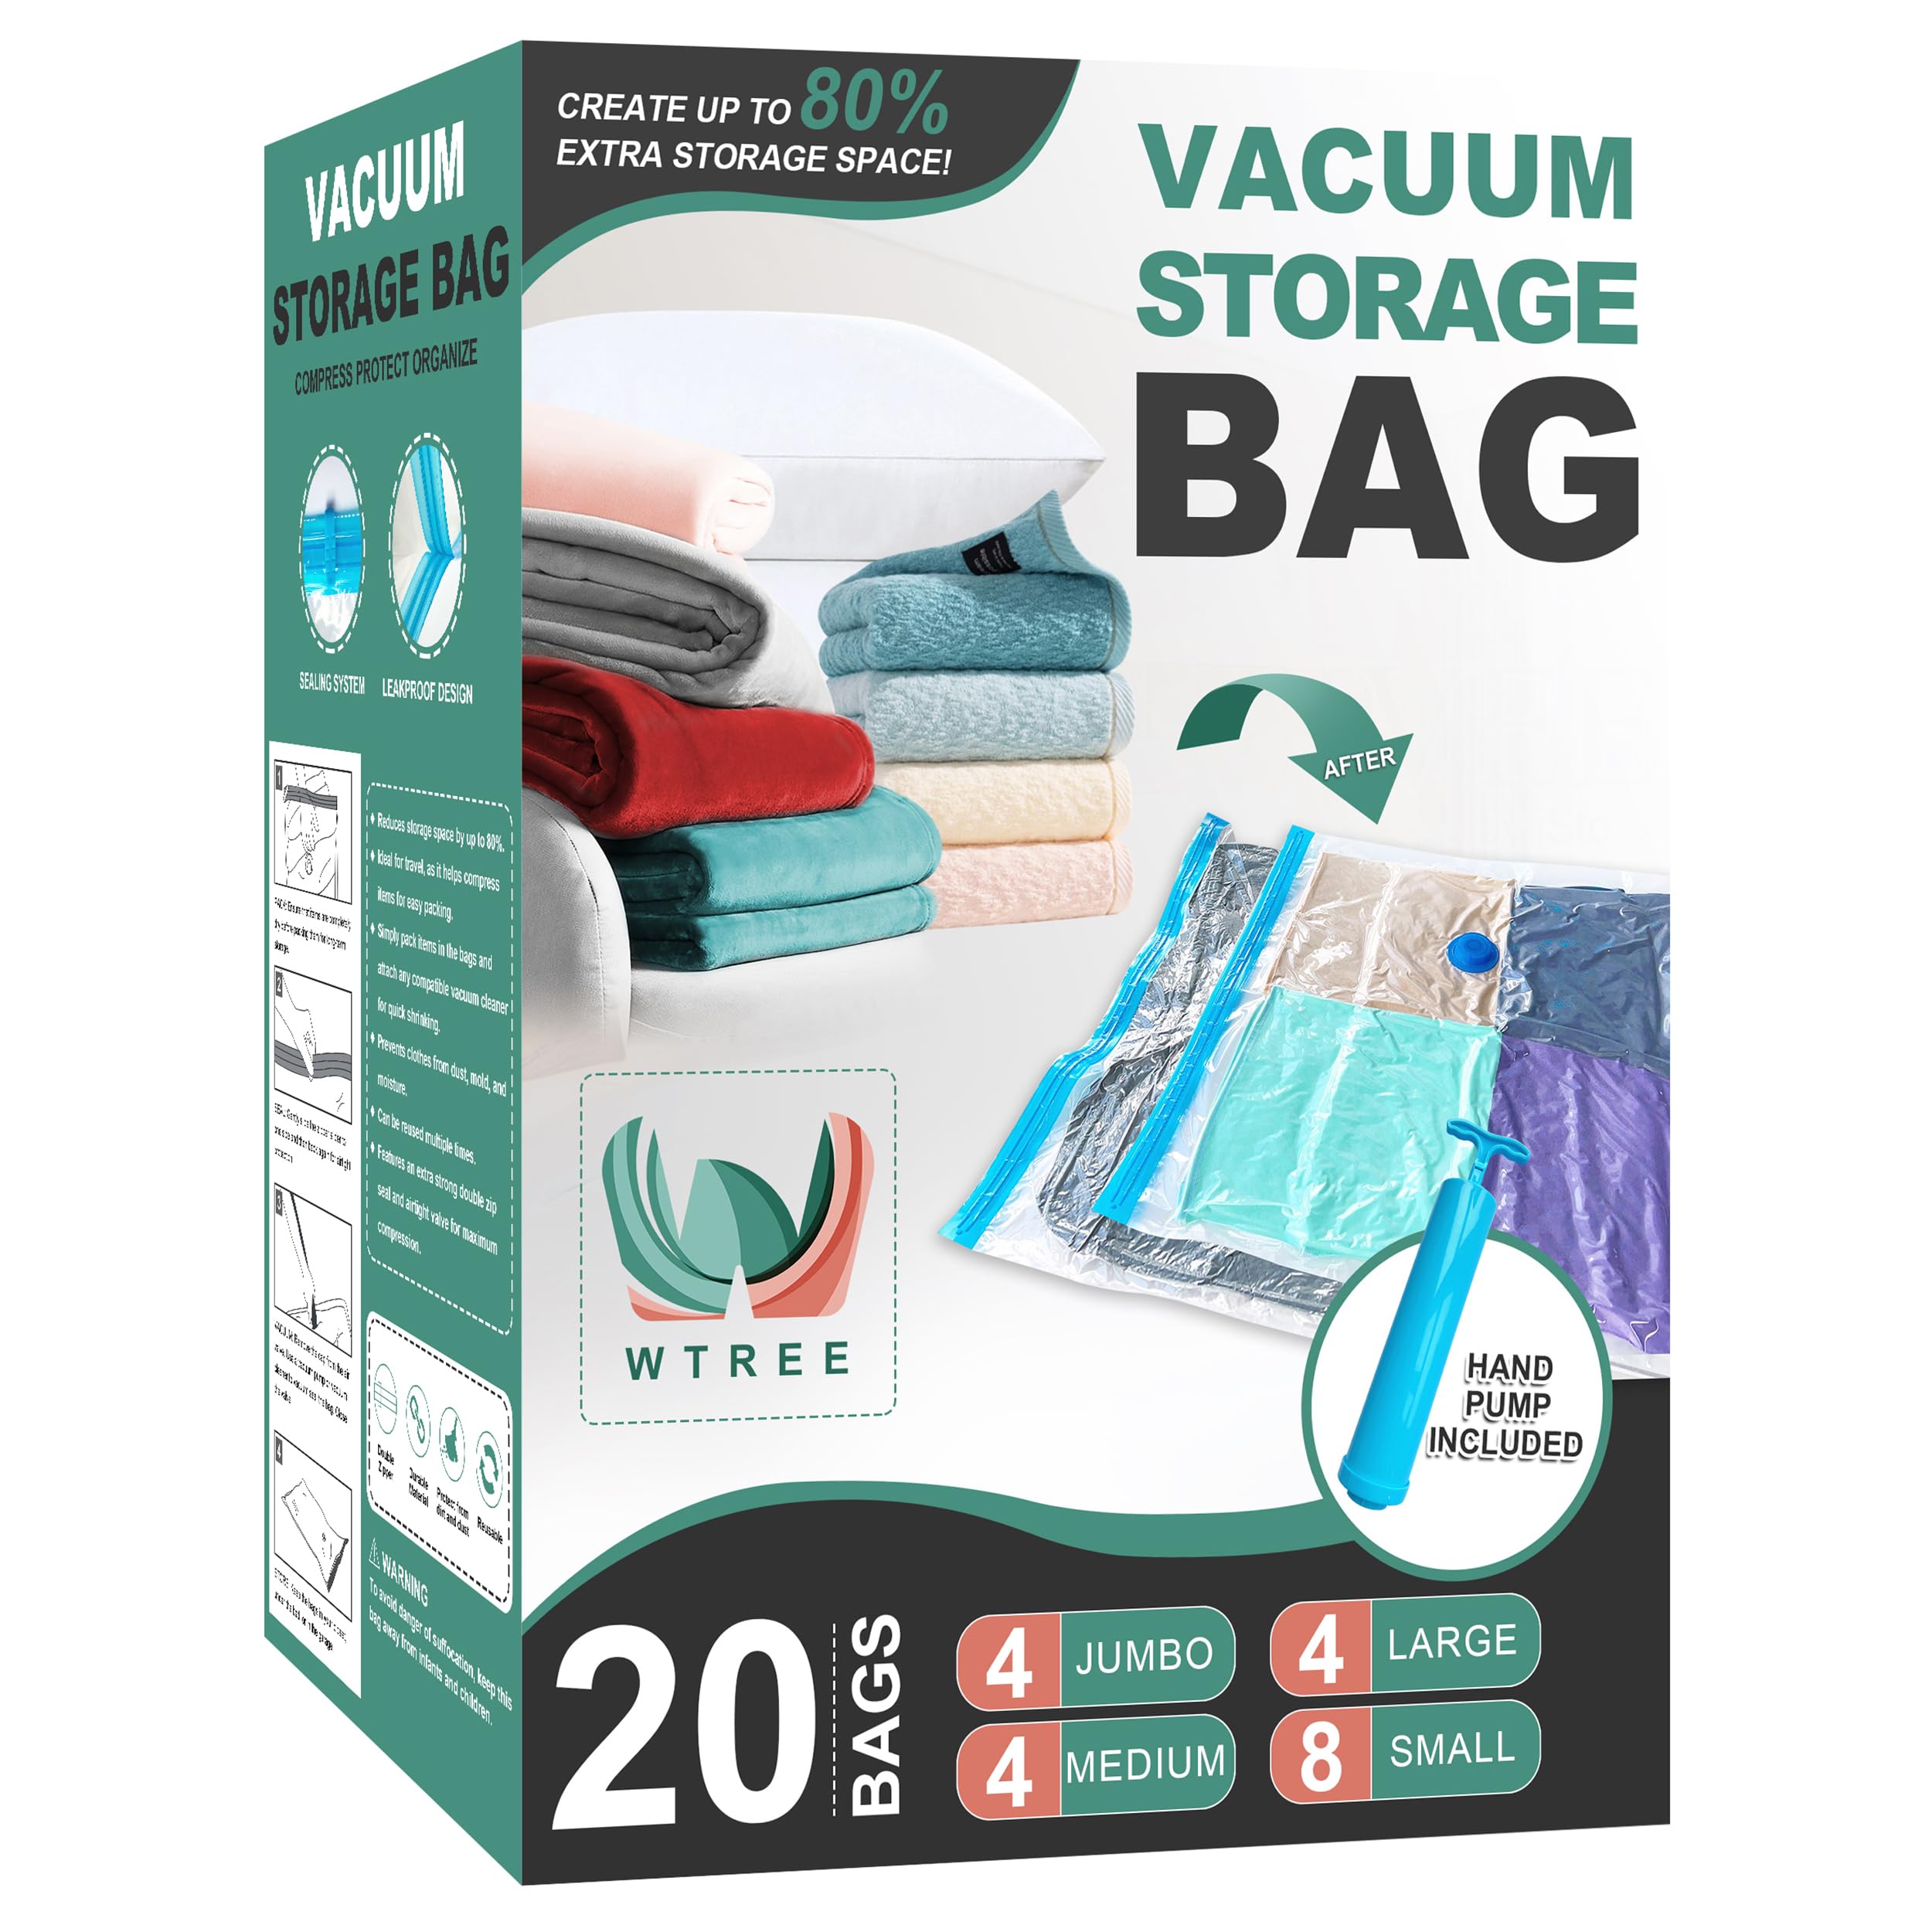 WTREE Vacuum Storage Bags